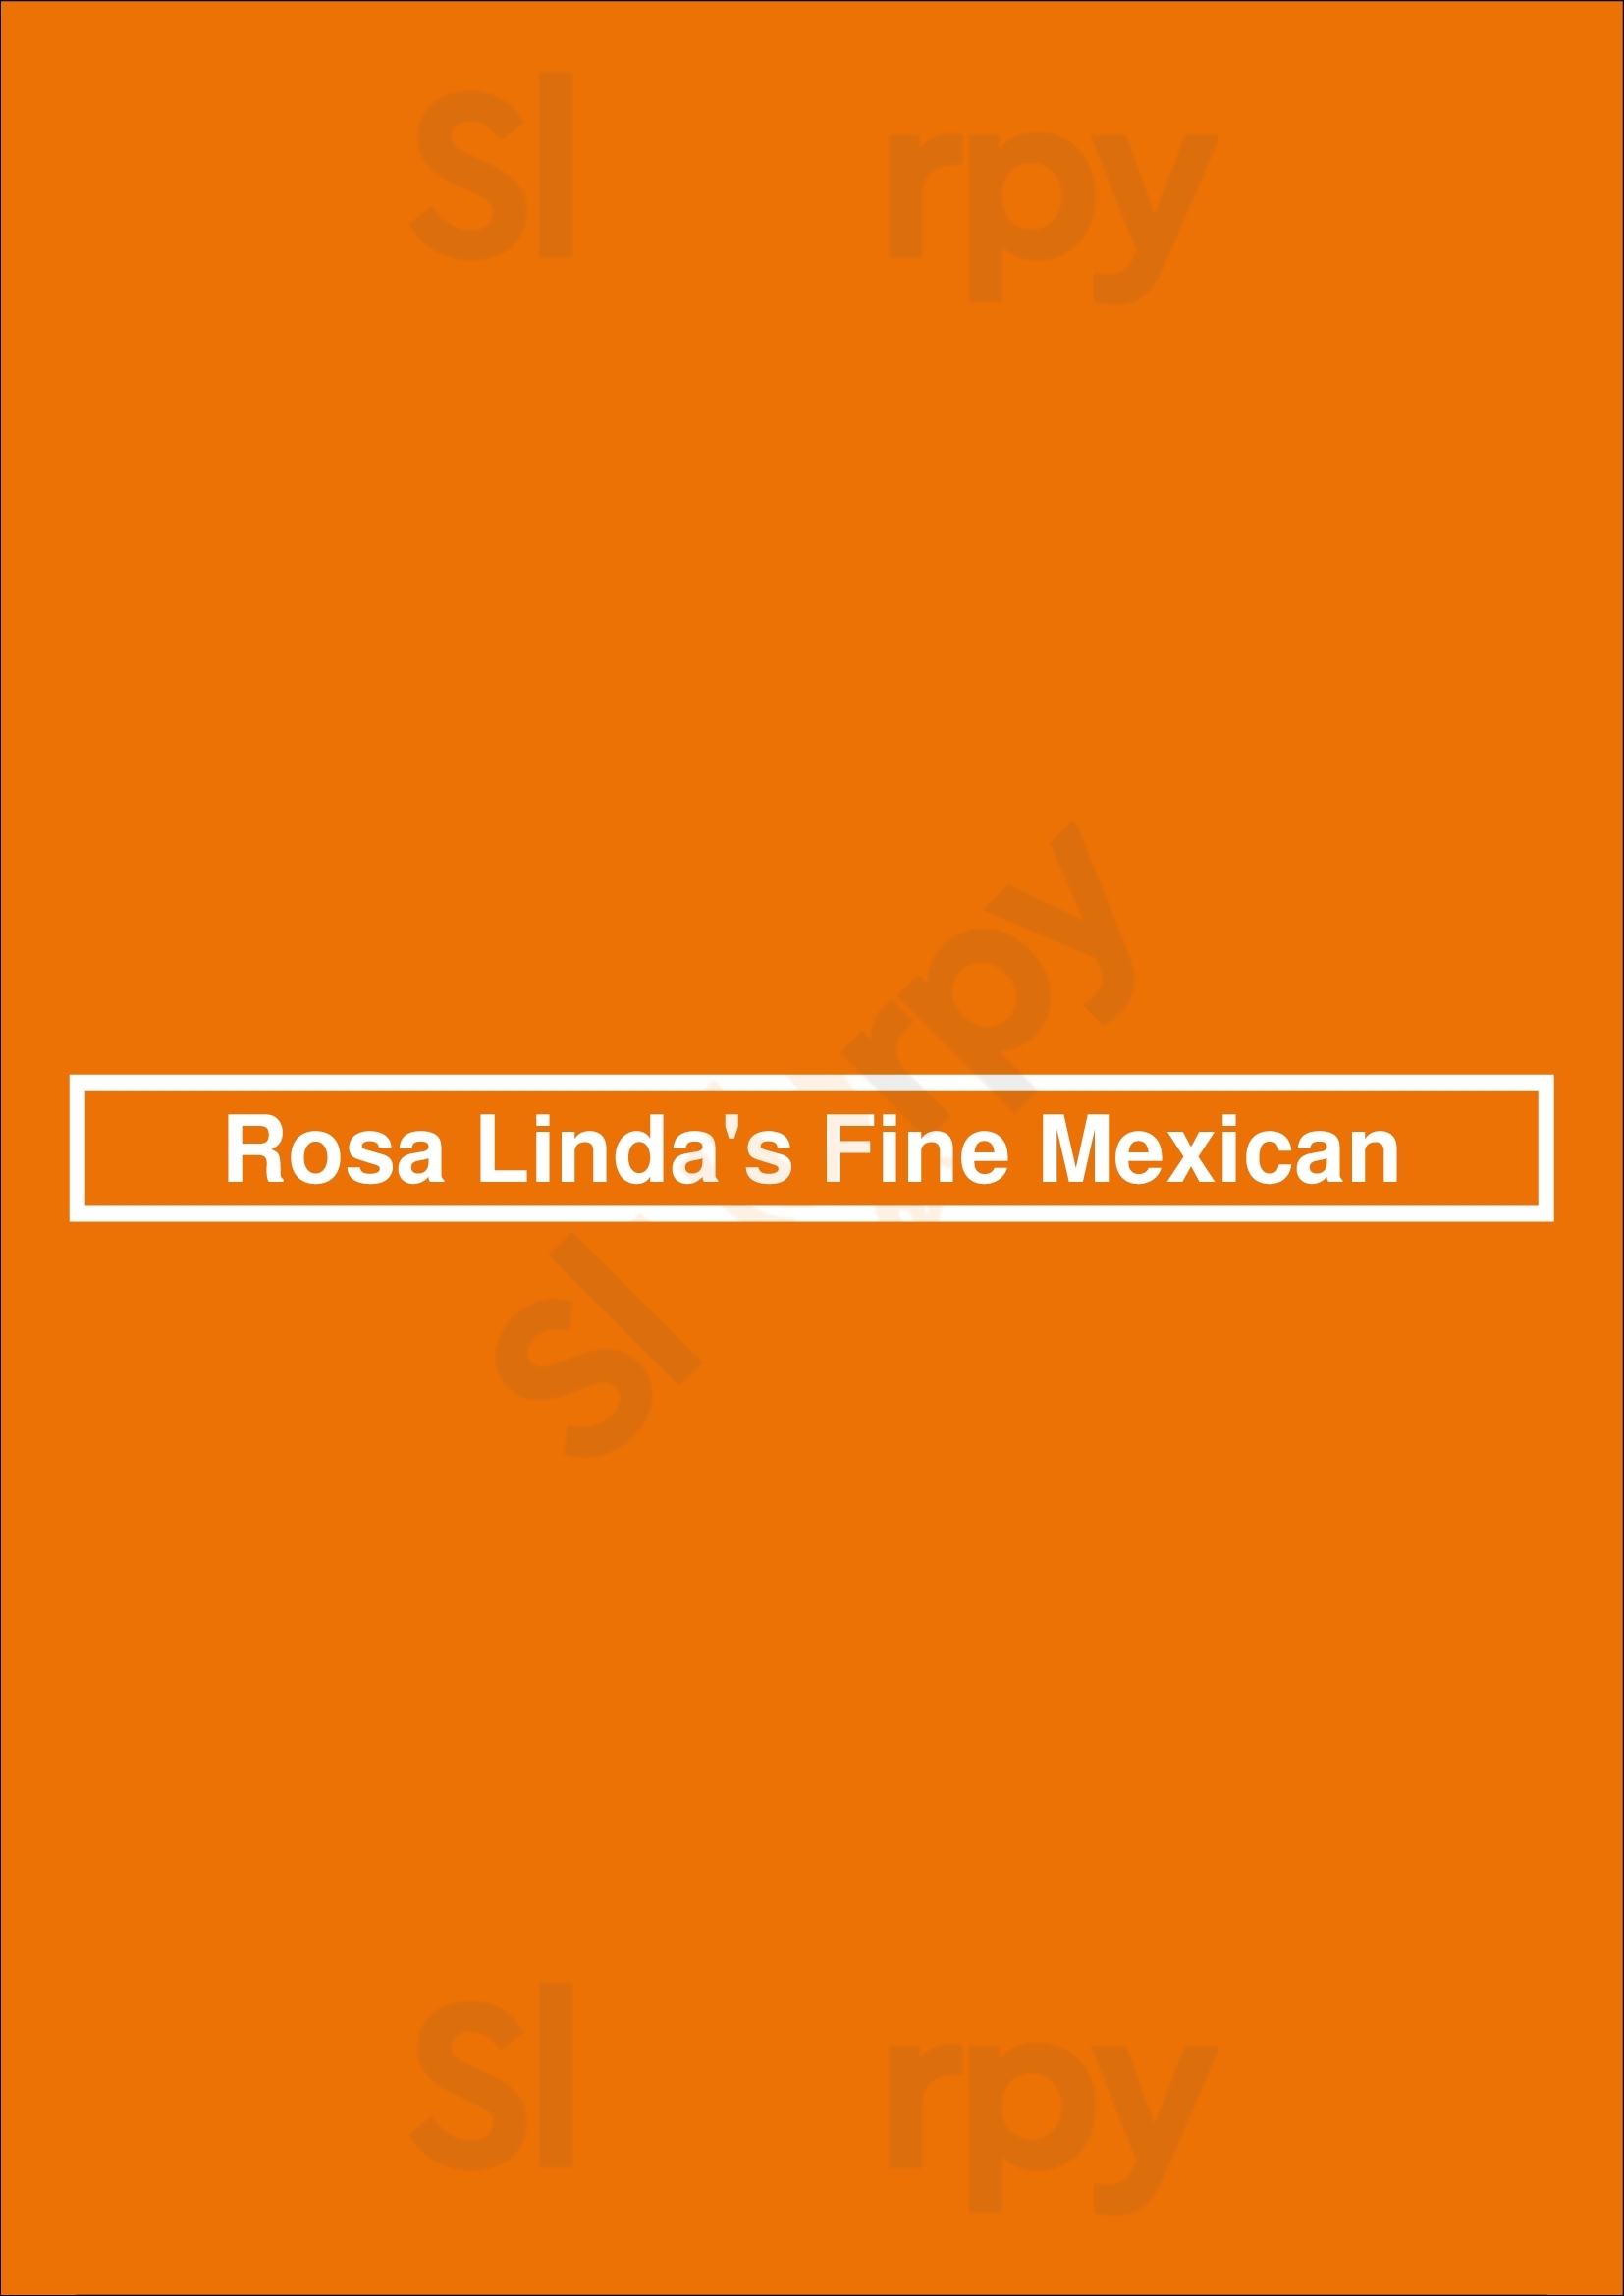 Rosa Linda's Fine Mexican Fresno Menu - 1